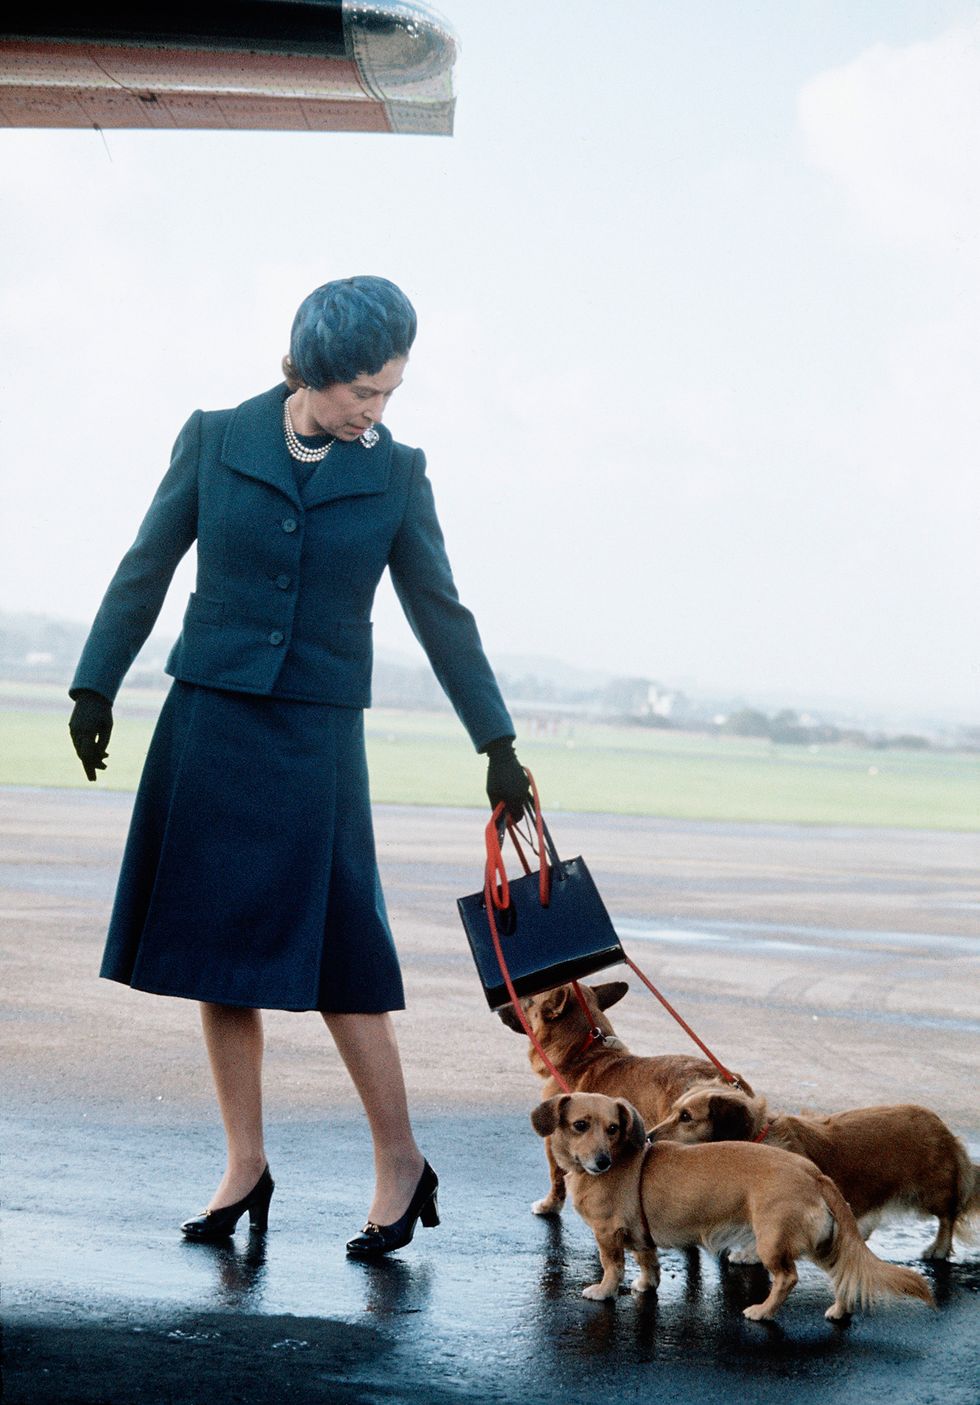 La Reina Isabel II paseando con sus perros corgi, sus mascotas fueron sus grandes compañeros (Getty Images)